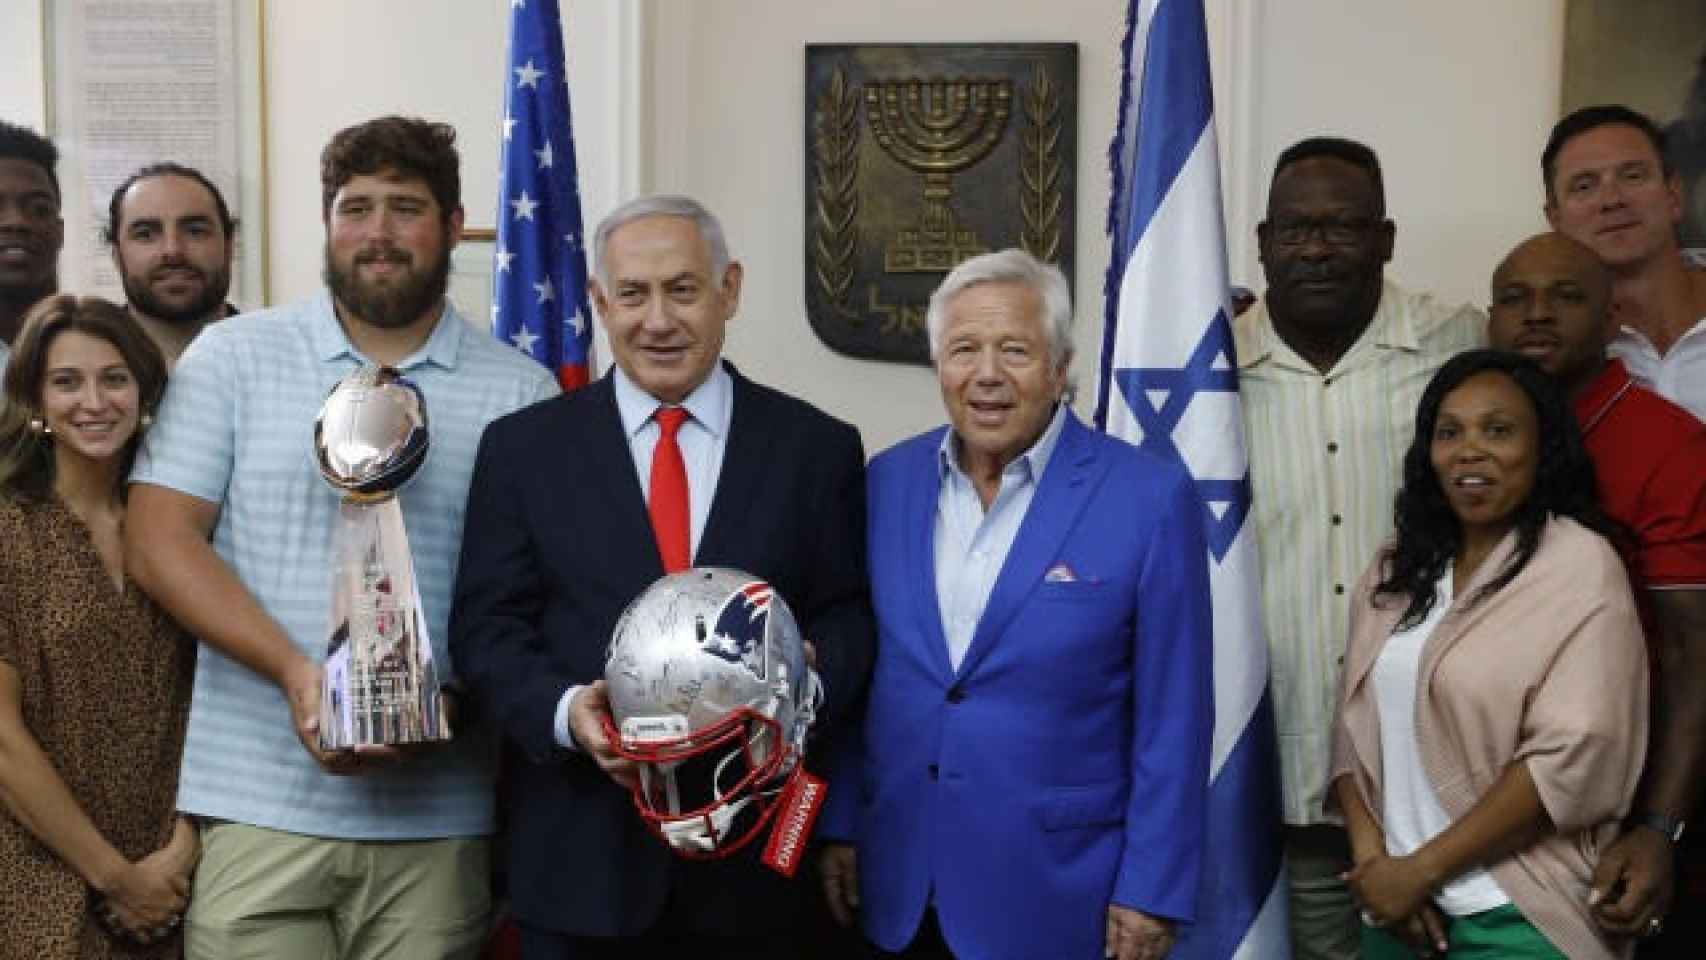 Kraft, un empresario judío conocido por su participación con Oreo y sus importantes donaciones a la Universidad de Columbia, ha decidido retener su apoyo financiero en apoyo de Israel en medio de las tensiones con España.